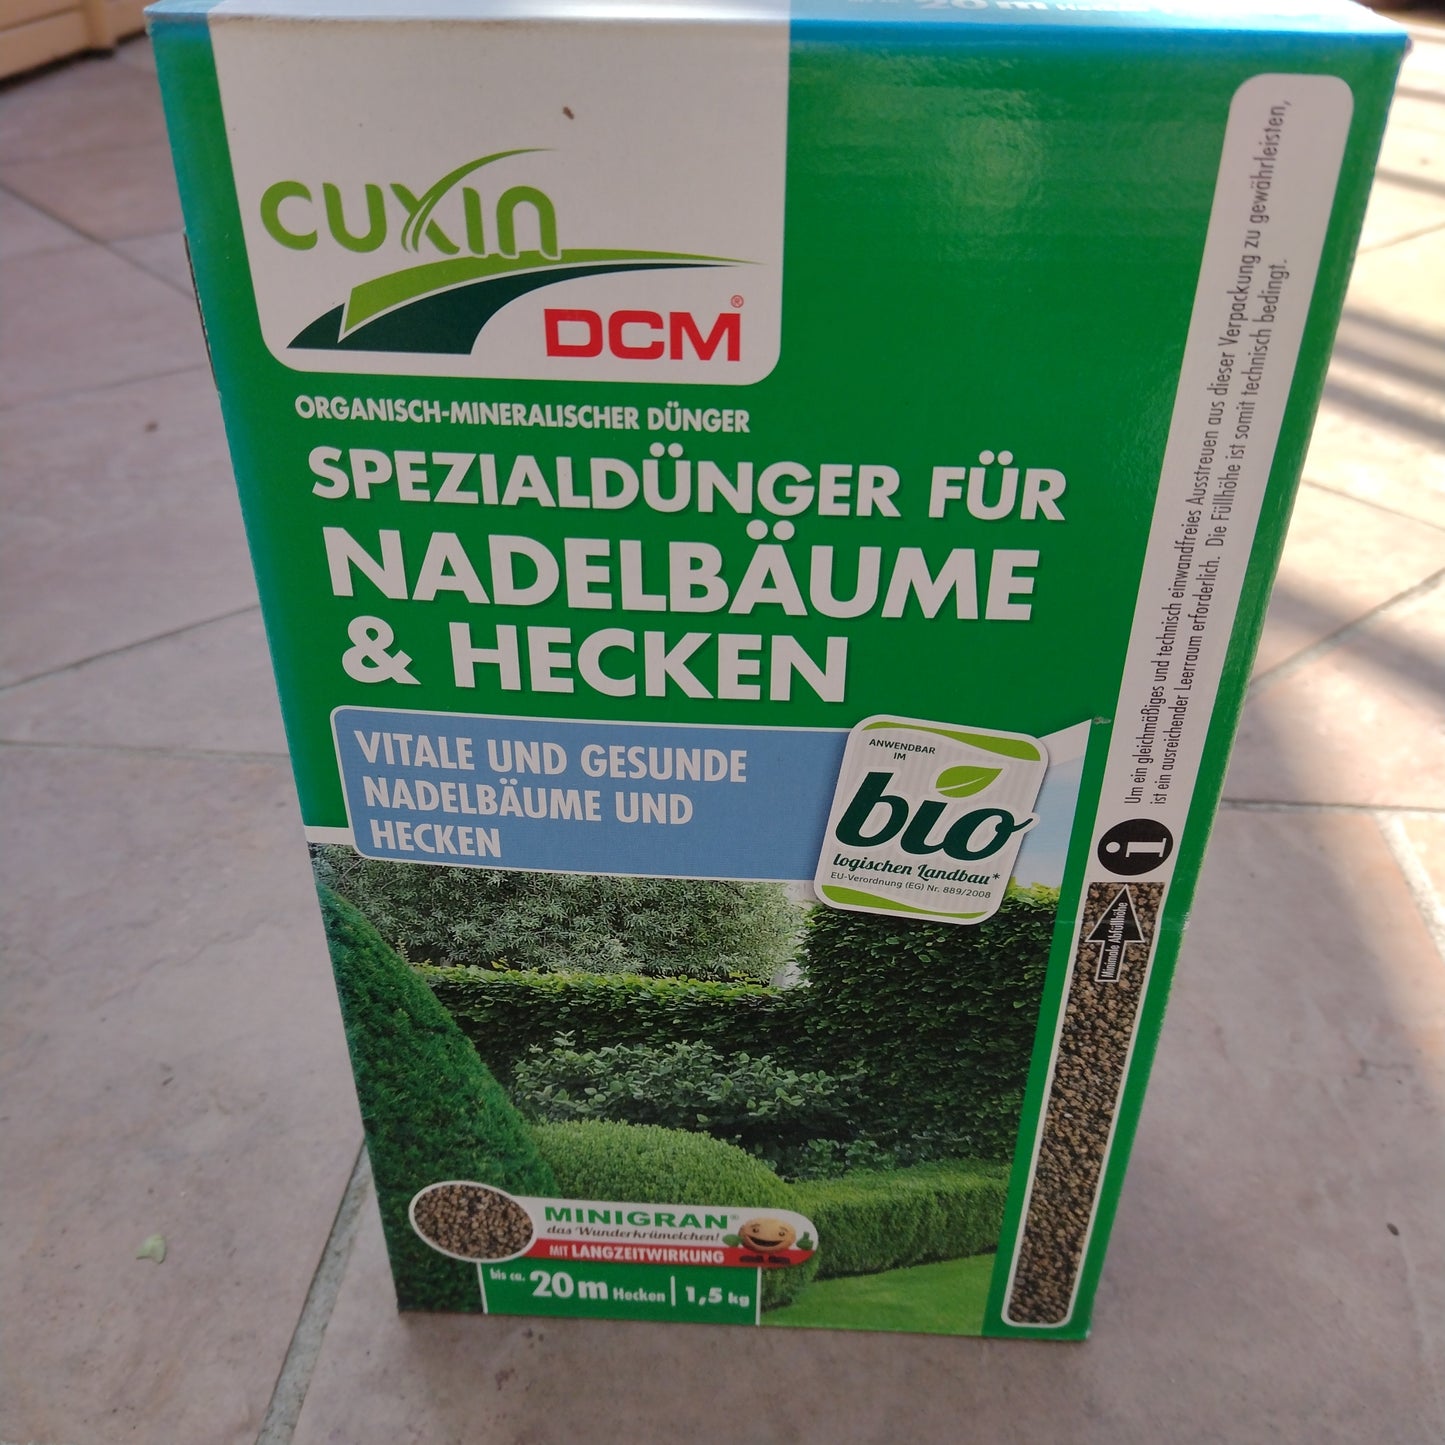 Spezialdünger Nadelbäume & Hecken 1,5 kg Cuxin DCM